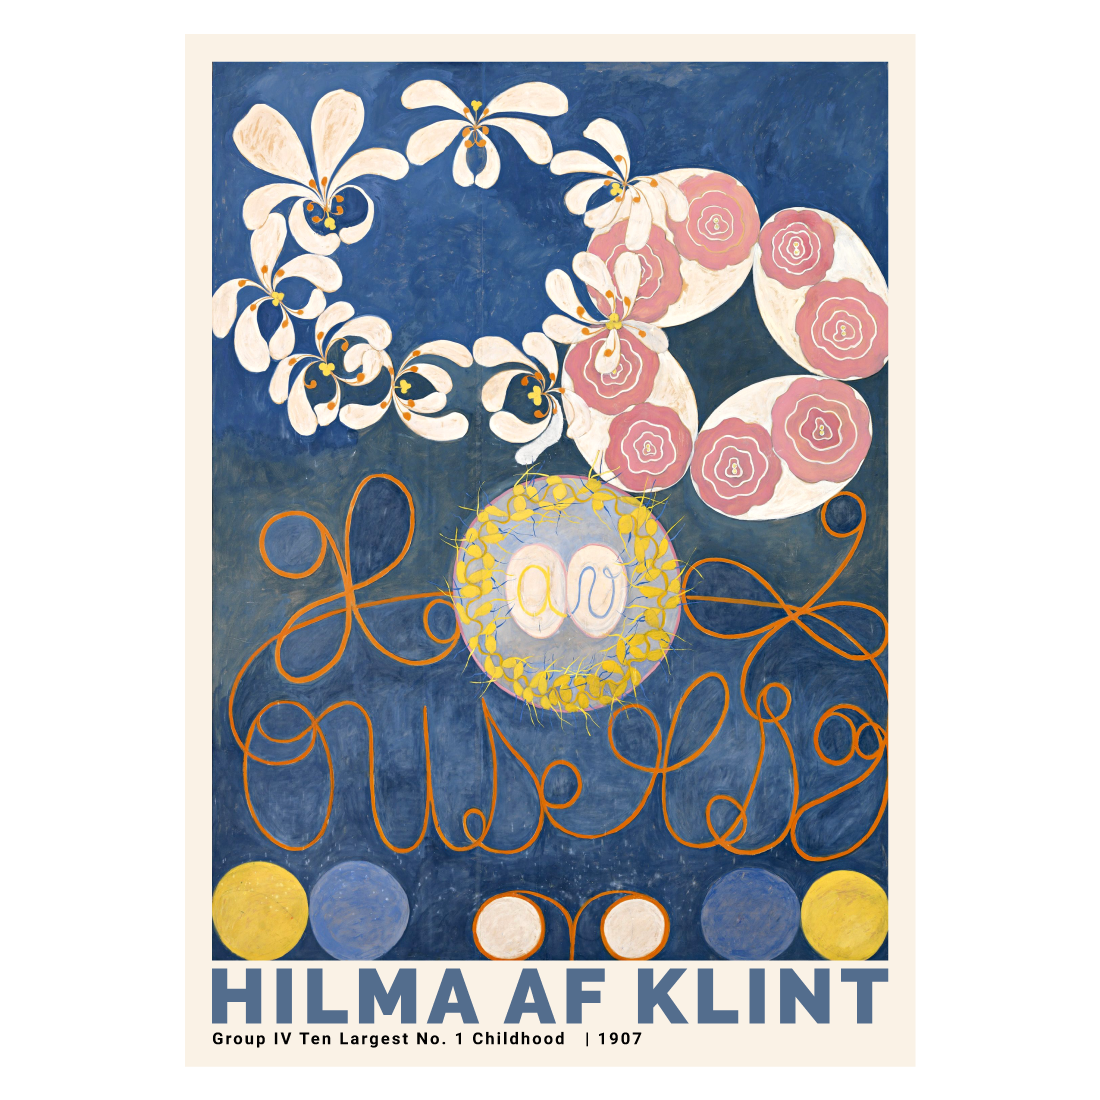 Hilma af Klint "No. 1 Childhood"